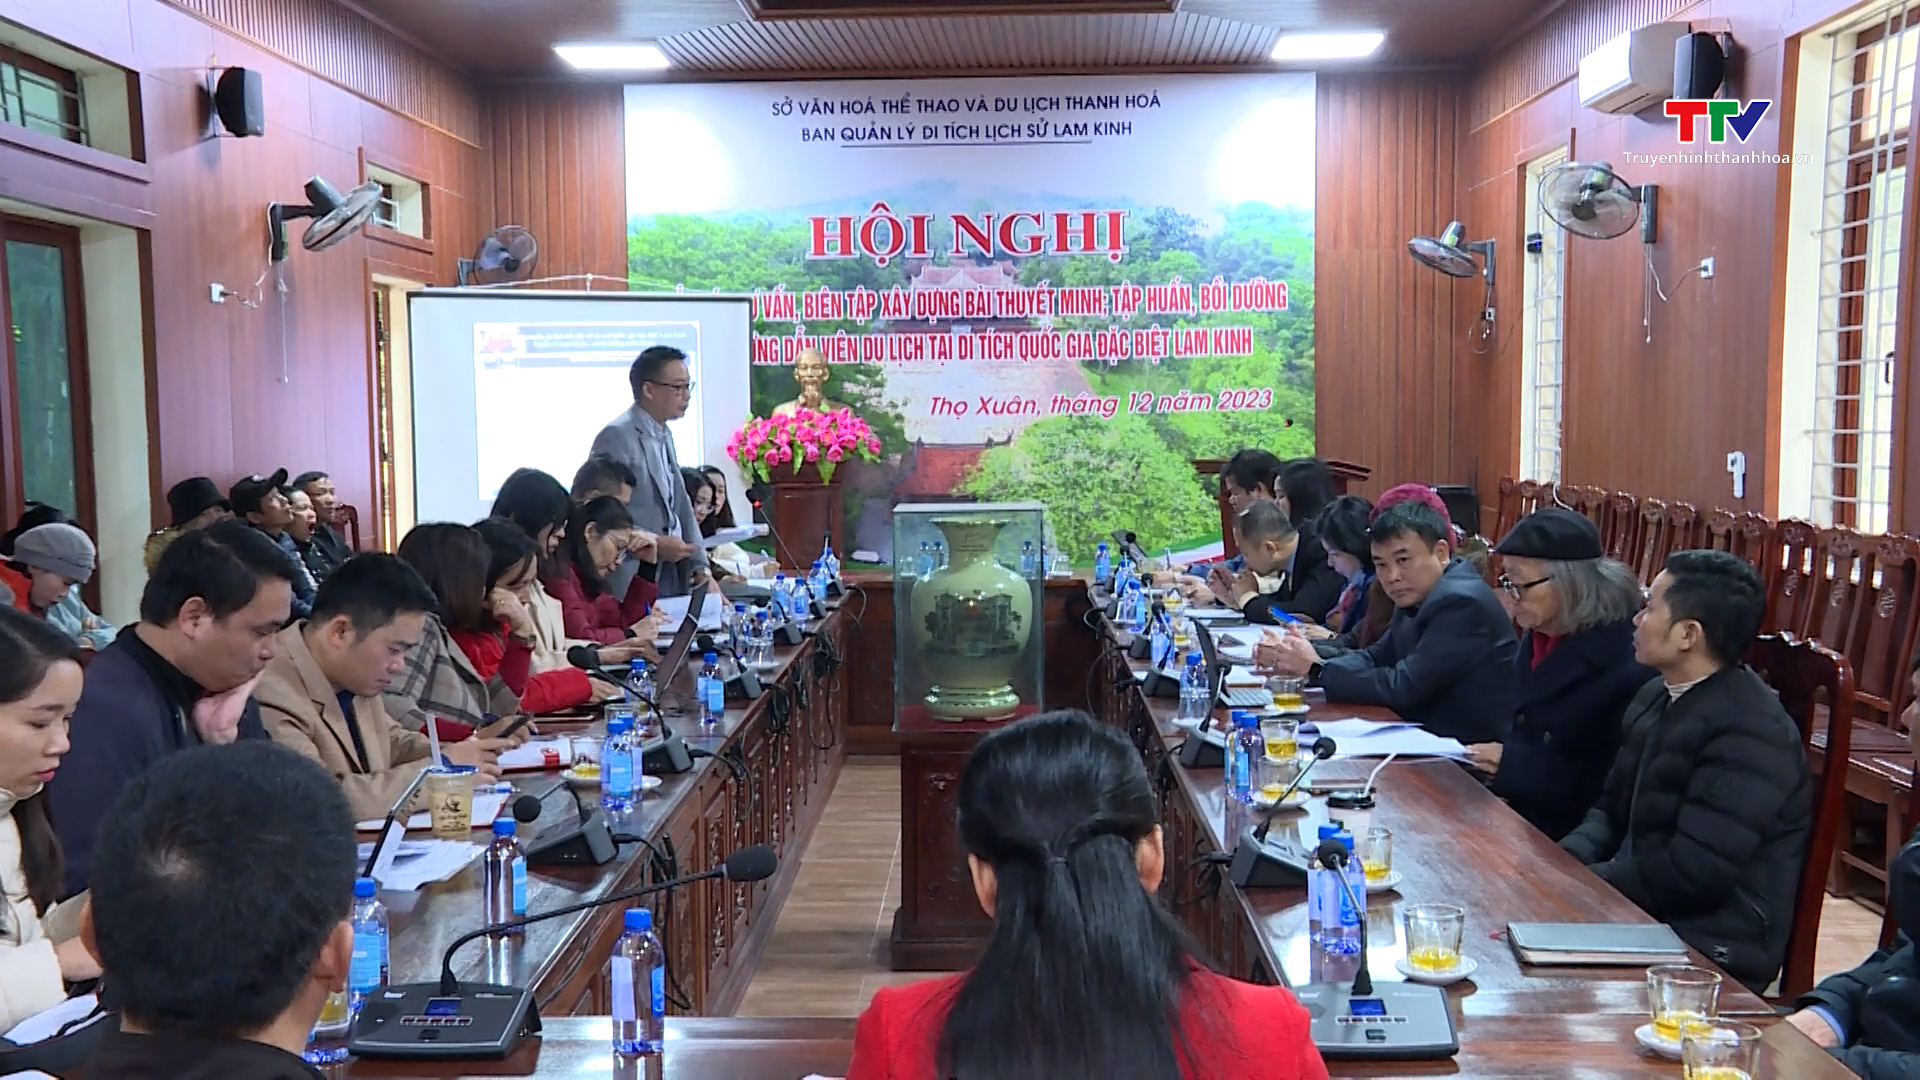 Hội nghị góp ý, thẩm định, hoàn thiện bài thuyết minh tour du lịch Lam Kinh- Ảnh 1.